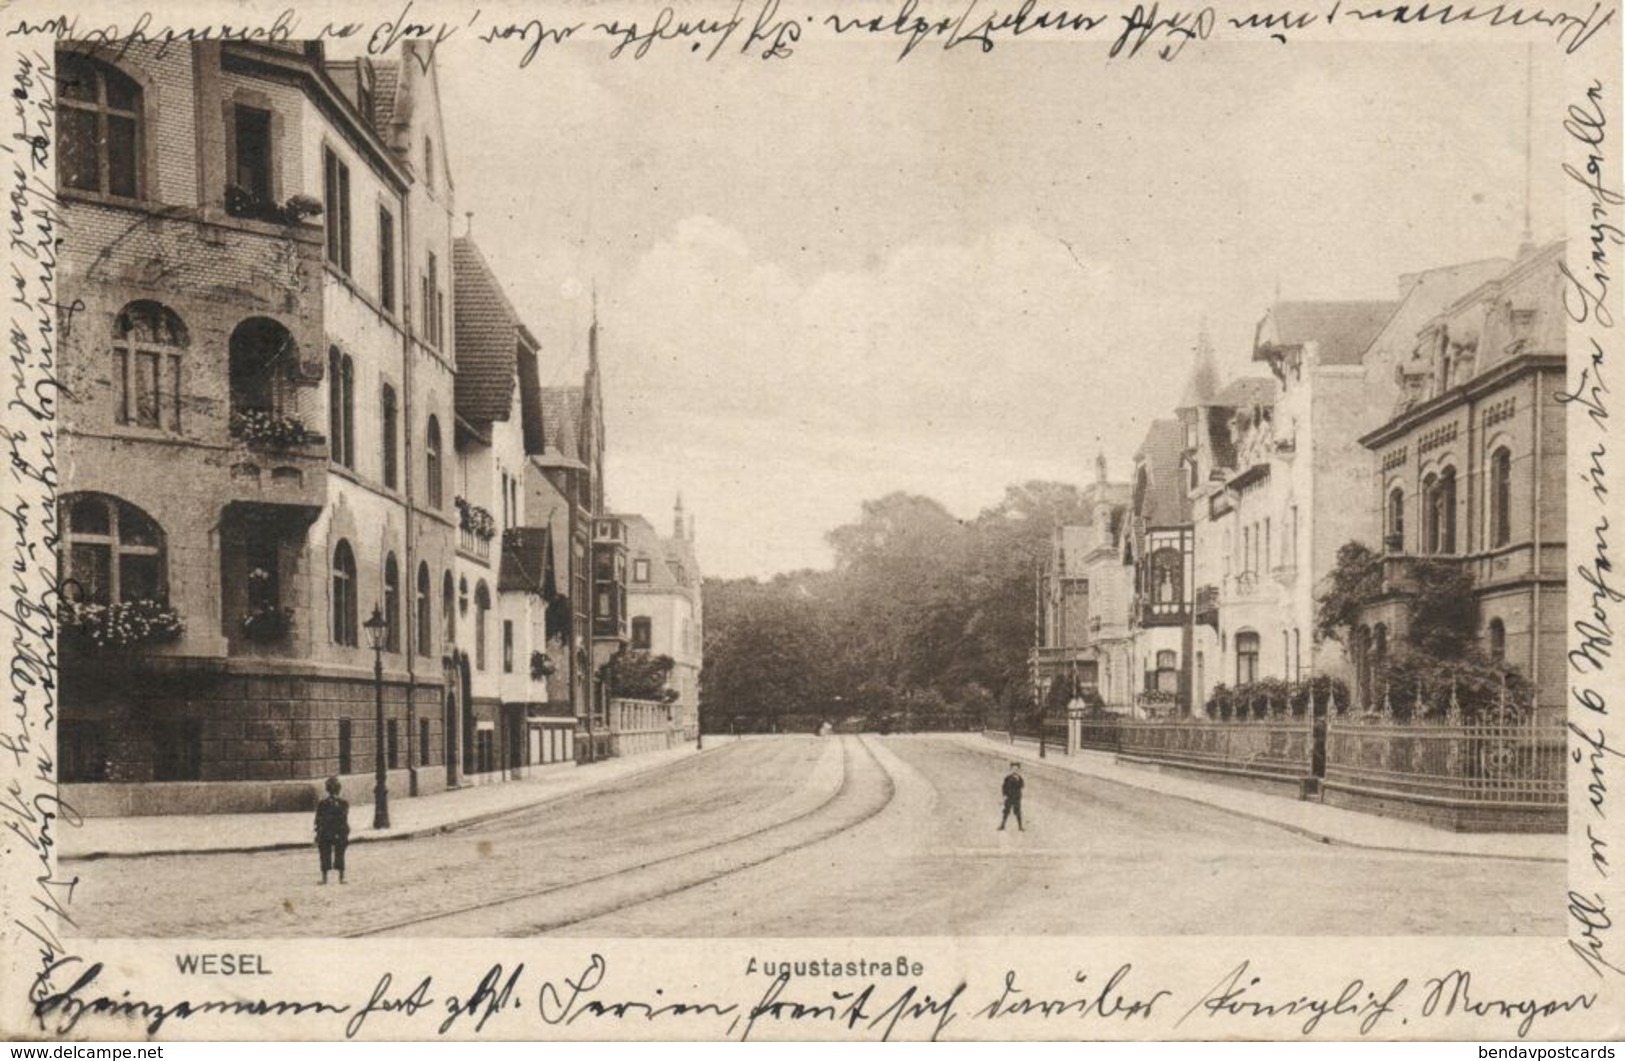 WESEL, Augustastrasse (1925) AK - Wesel